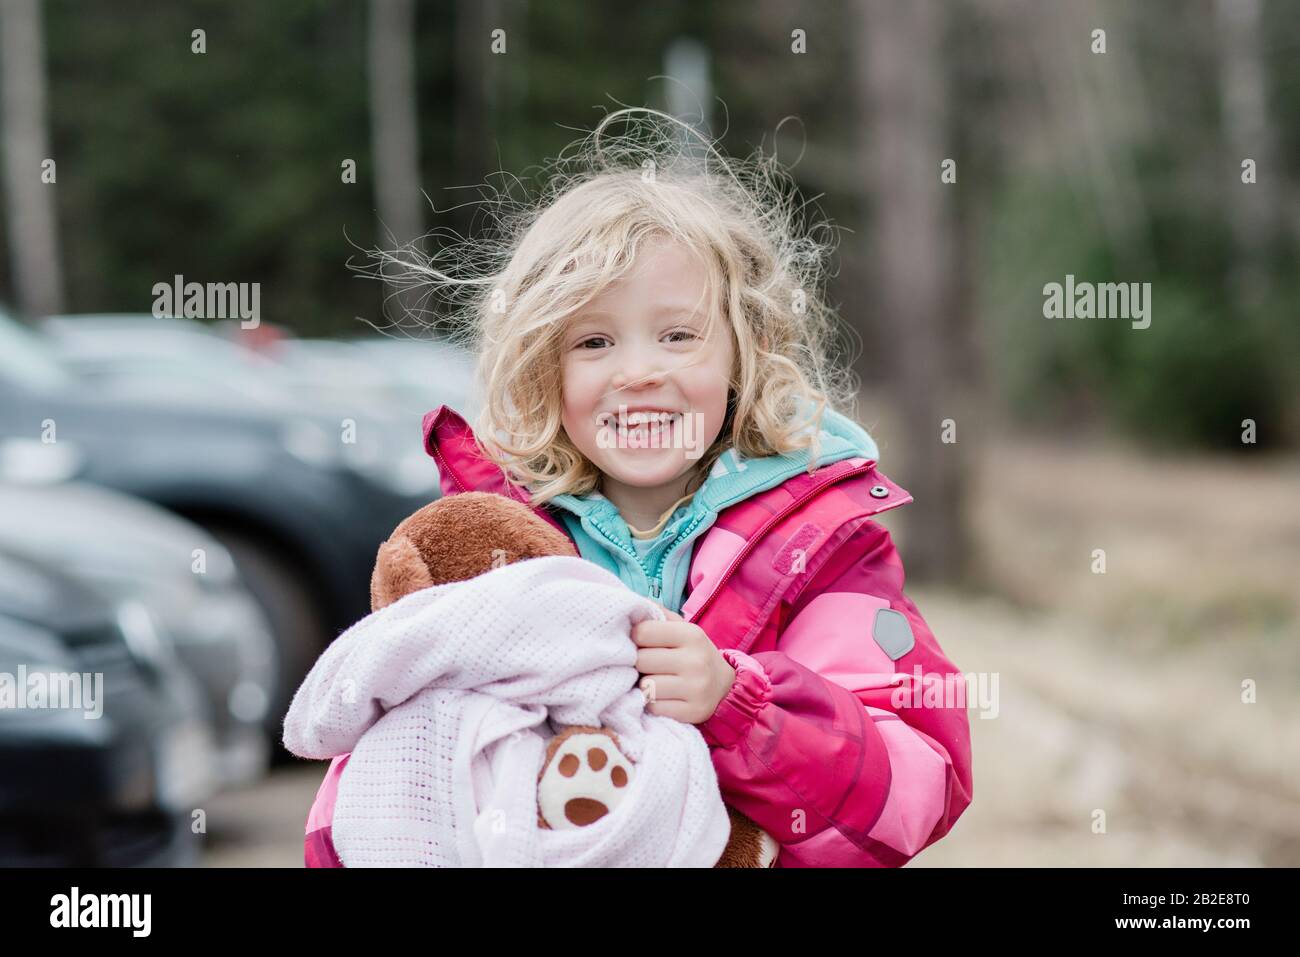 portrait franc d'une jeune fille souriant avec des cheveux salissants et un édredon Banque D'Images